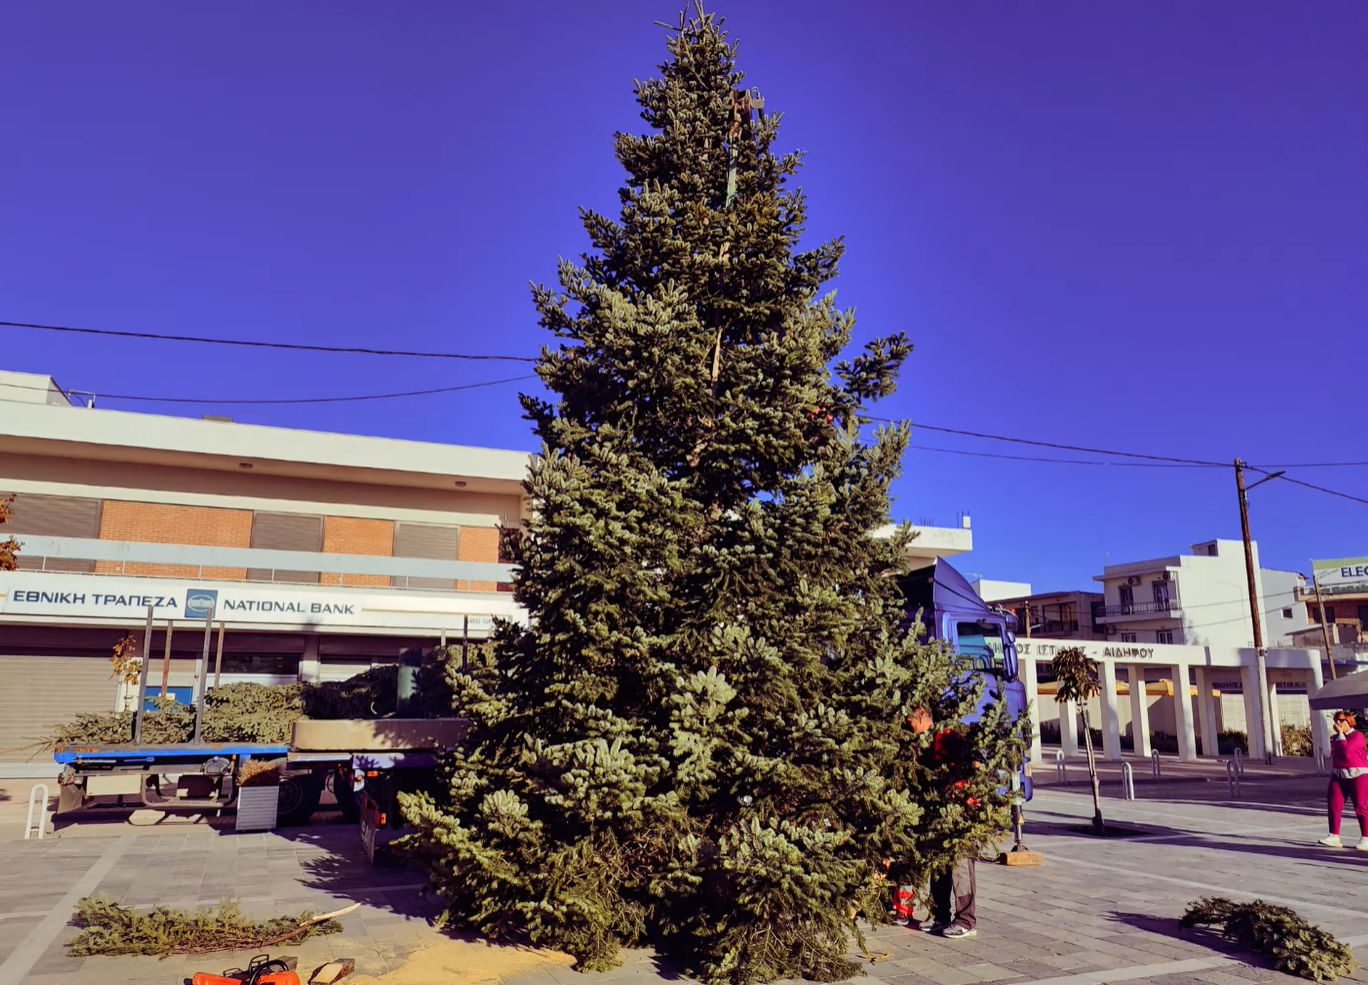 Εύβοια: Το δέντρο που κλέβει τις εντυπώσεις φωταγωγείται στις 15 Δεκεμβρίου